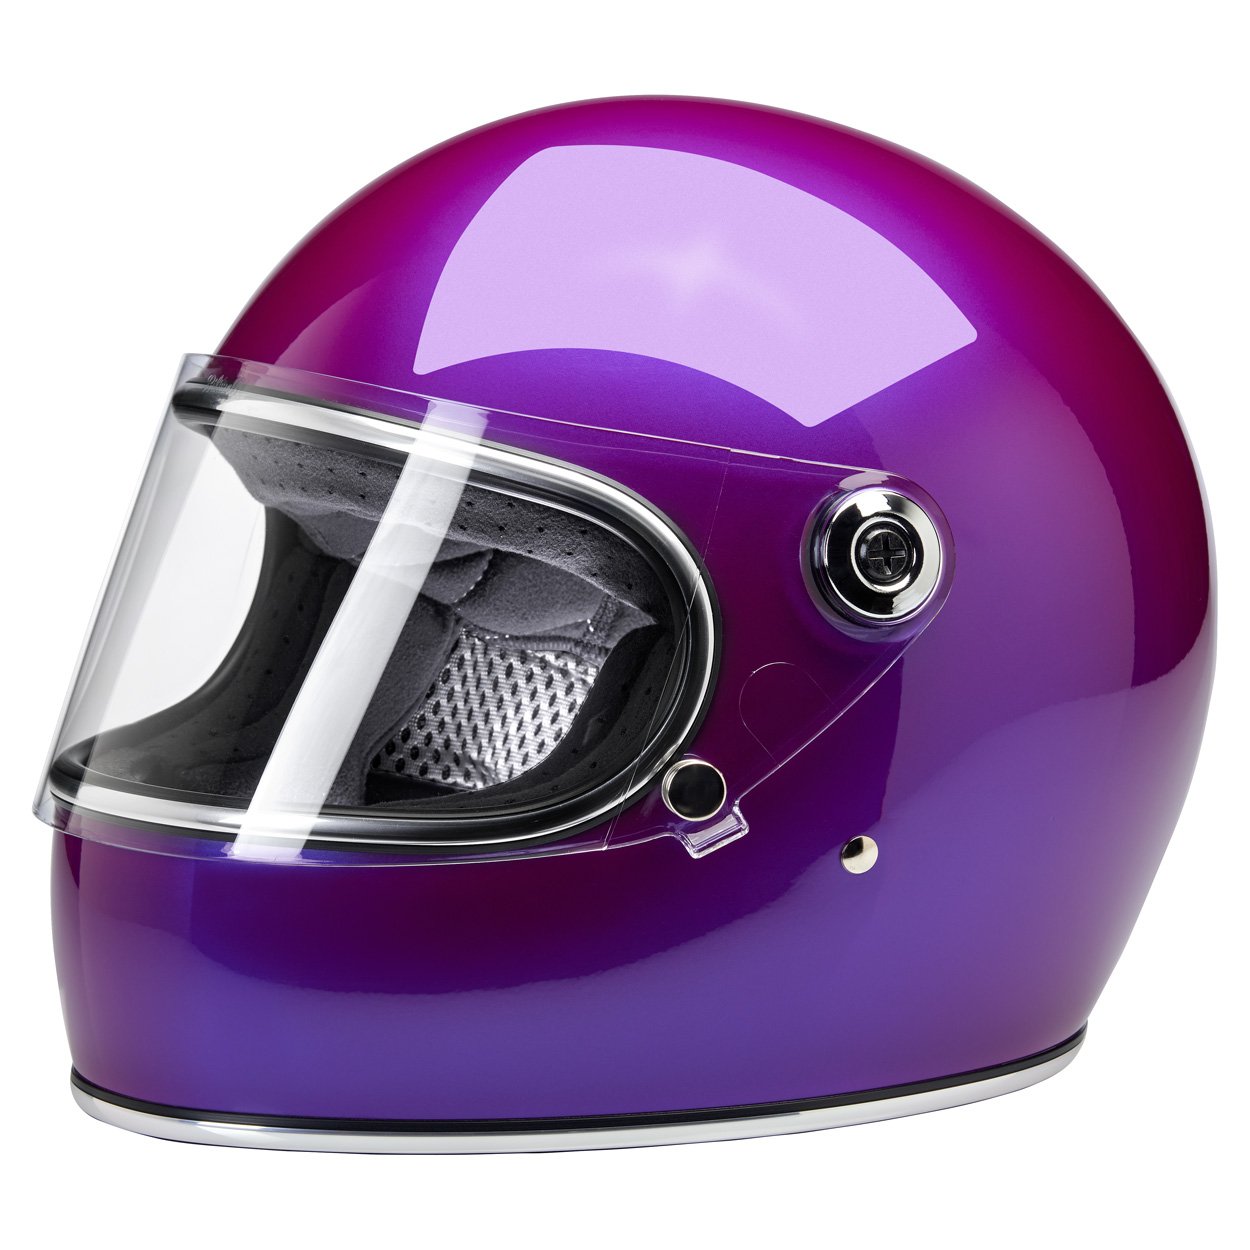 Biltwell Gringo S Helmet - Grape